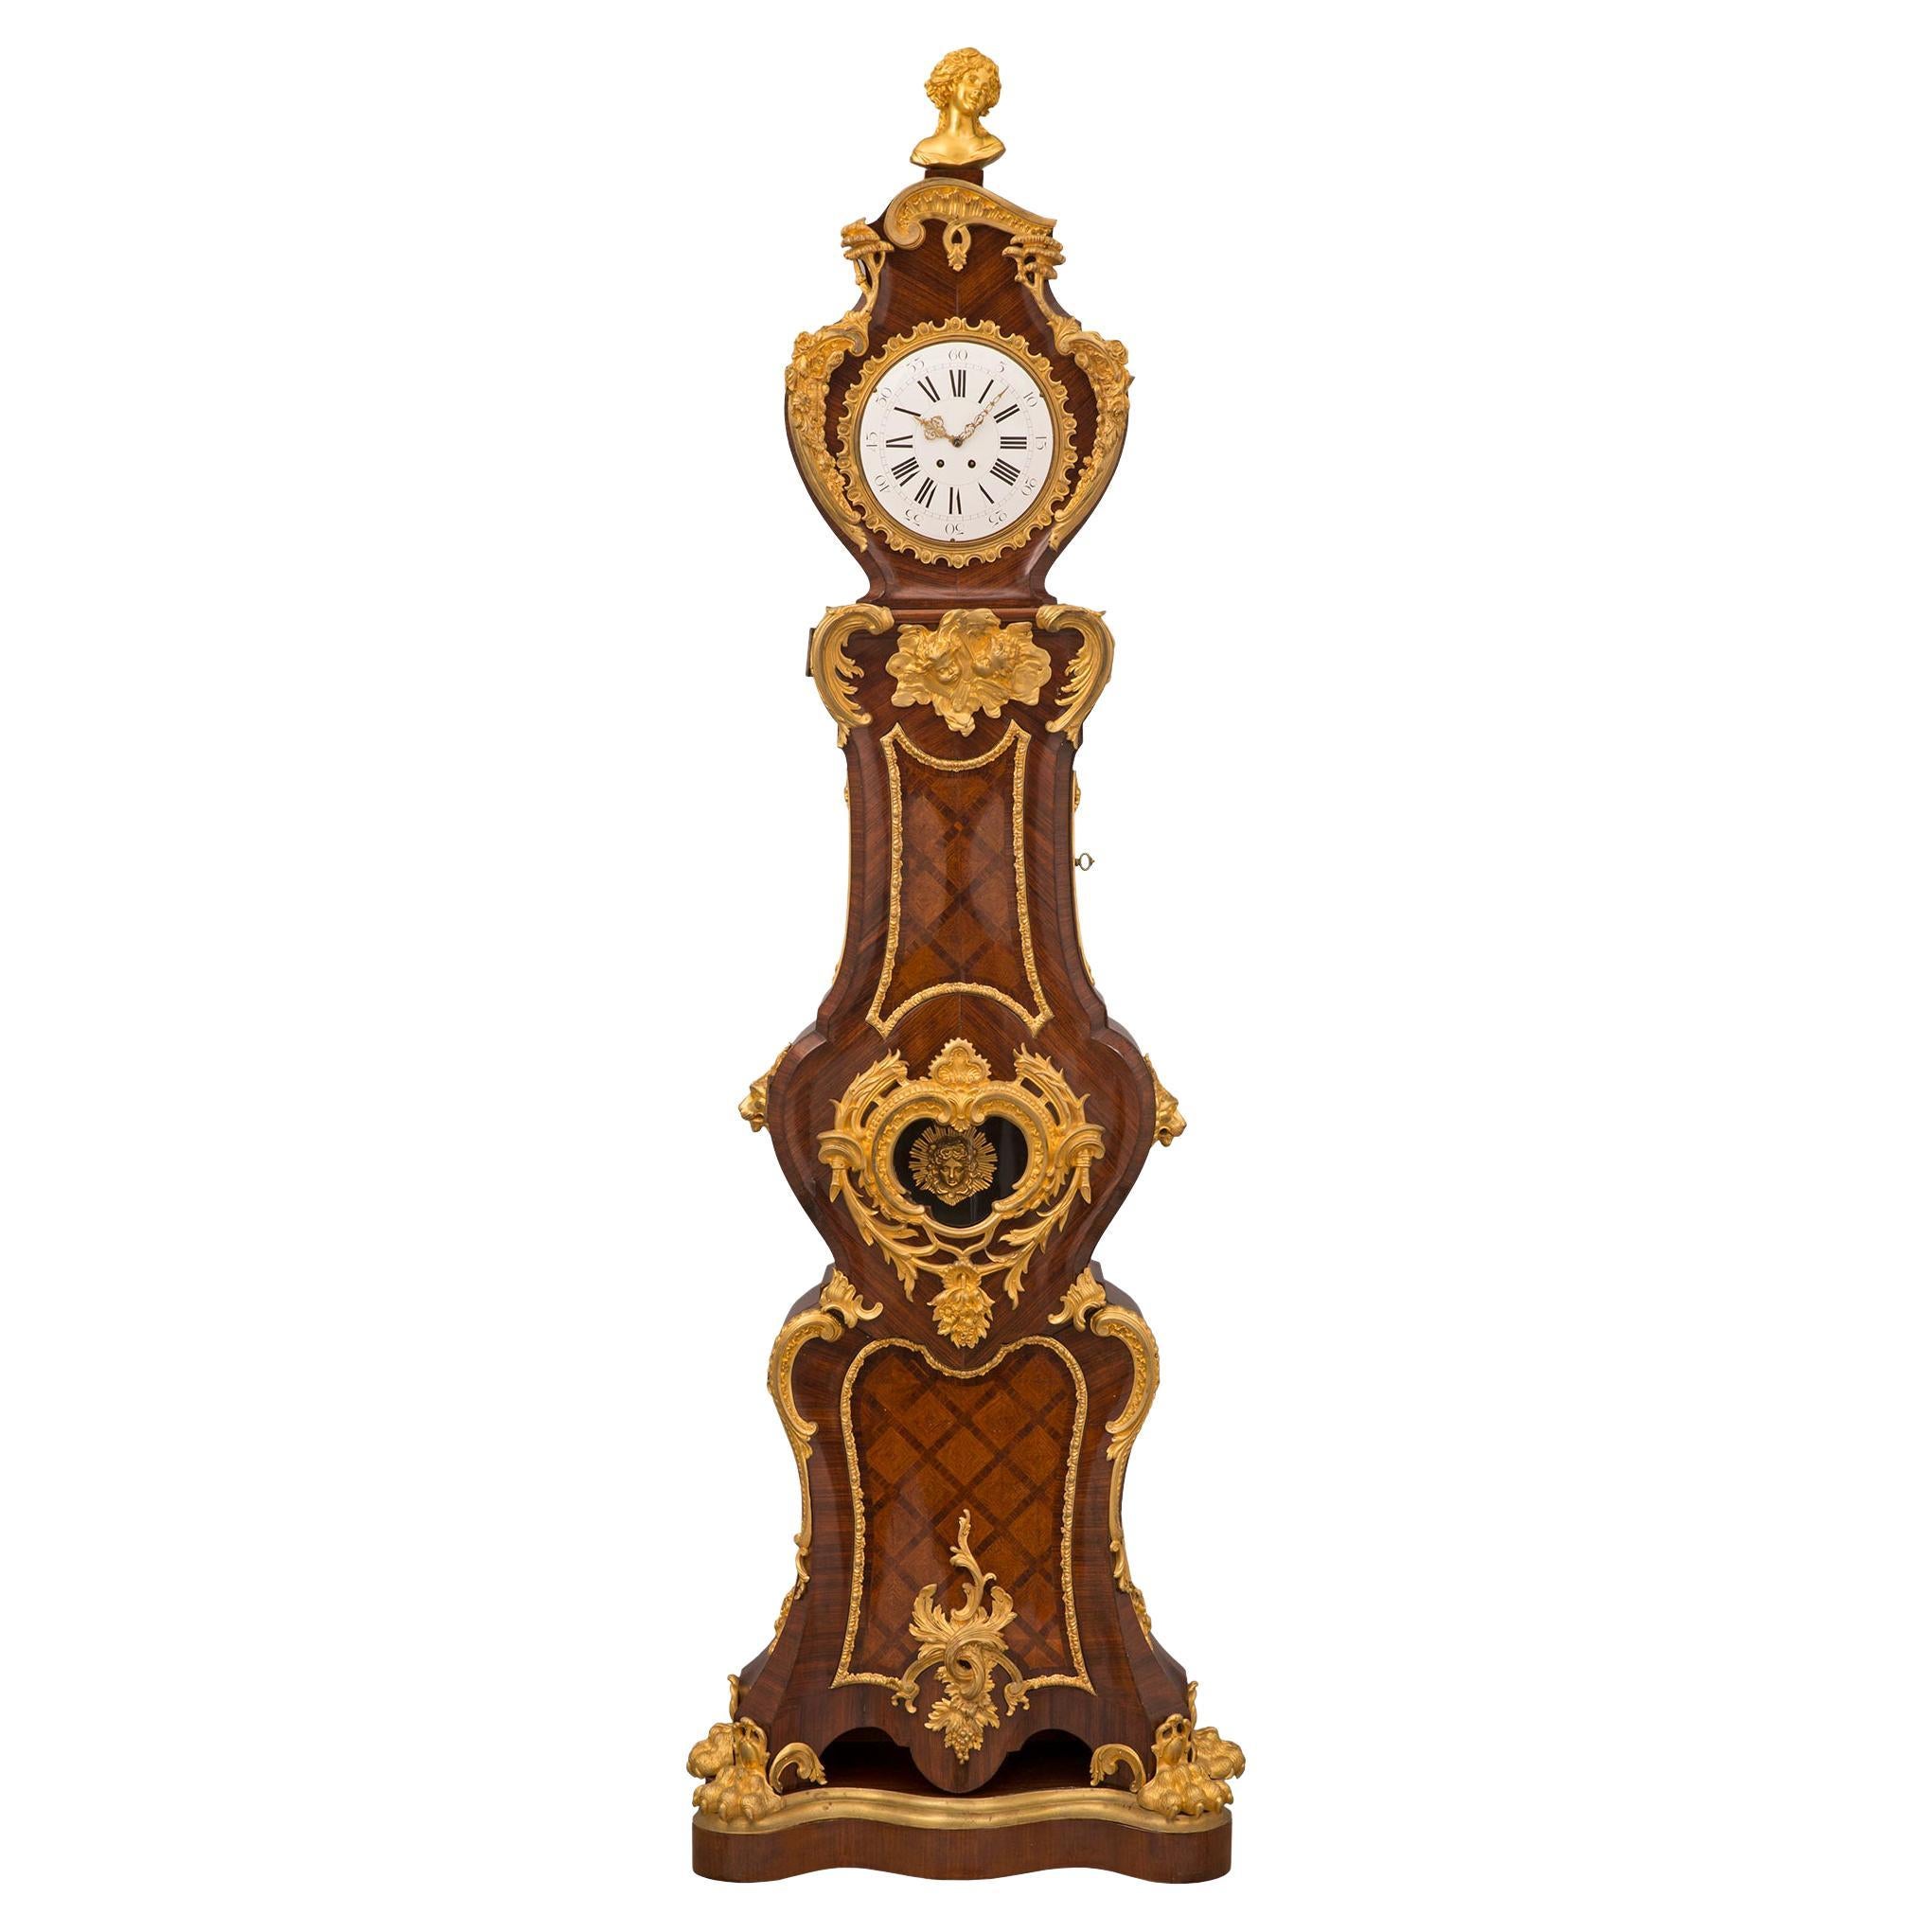 Horloge française du 19ème siècle de style Louis XV représentant son grand-père